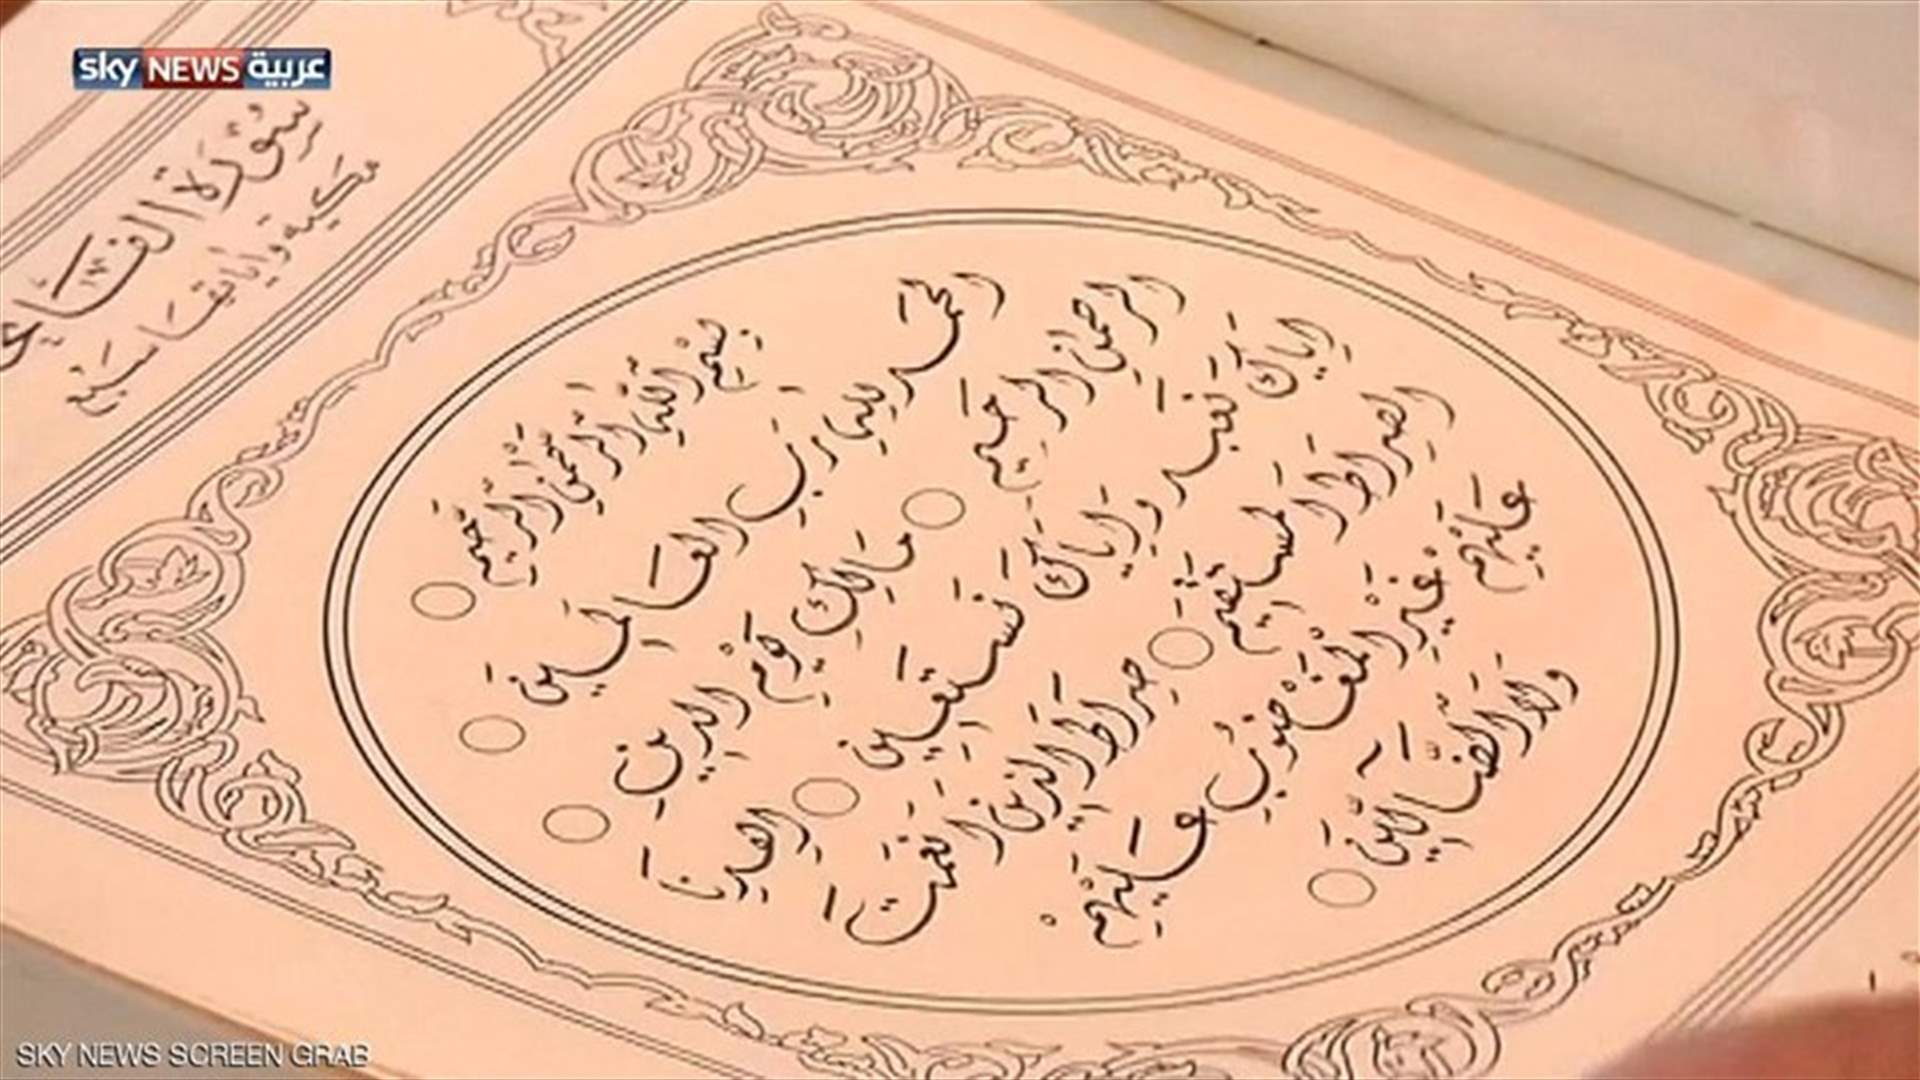 للمرة الأولى في العالم الإسلامي... كتابة القرآن بالخط الديواني بإمضاء لبناني